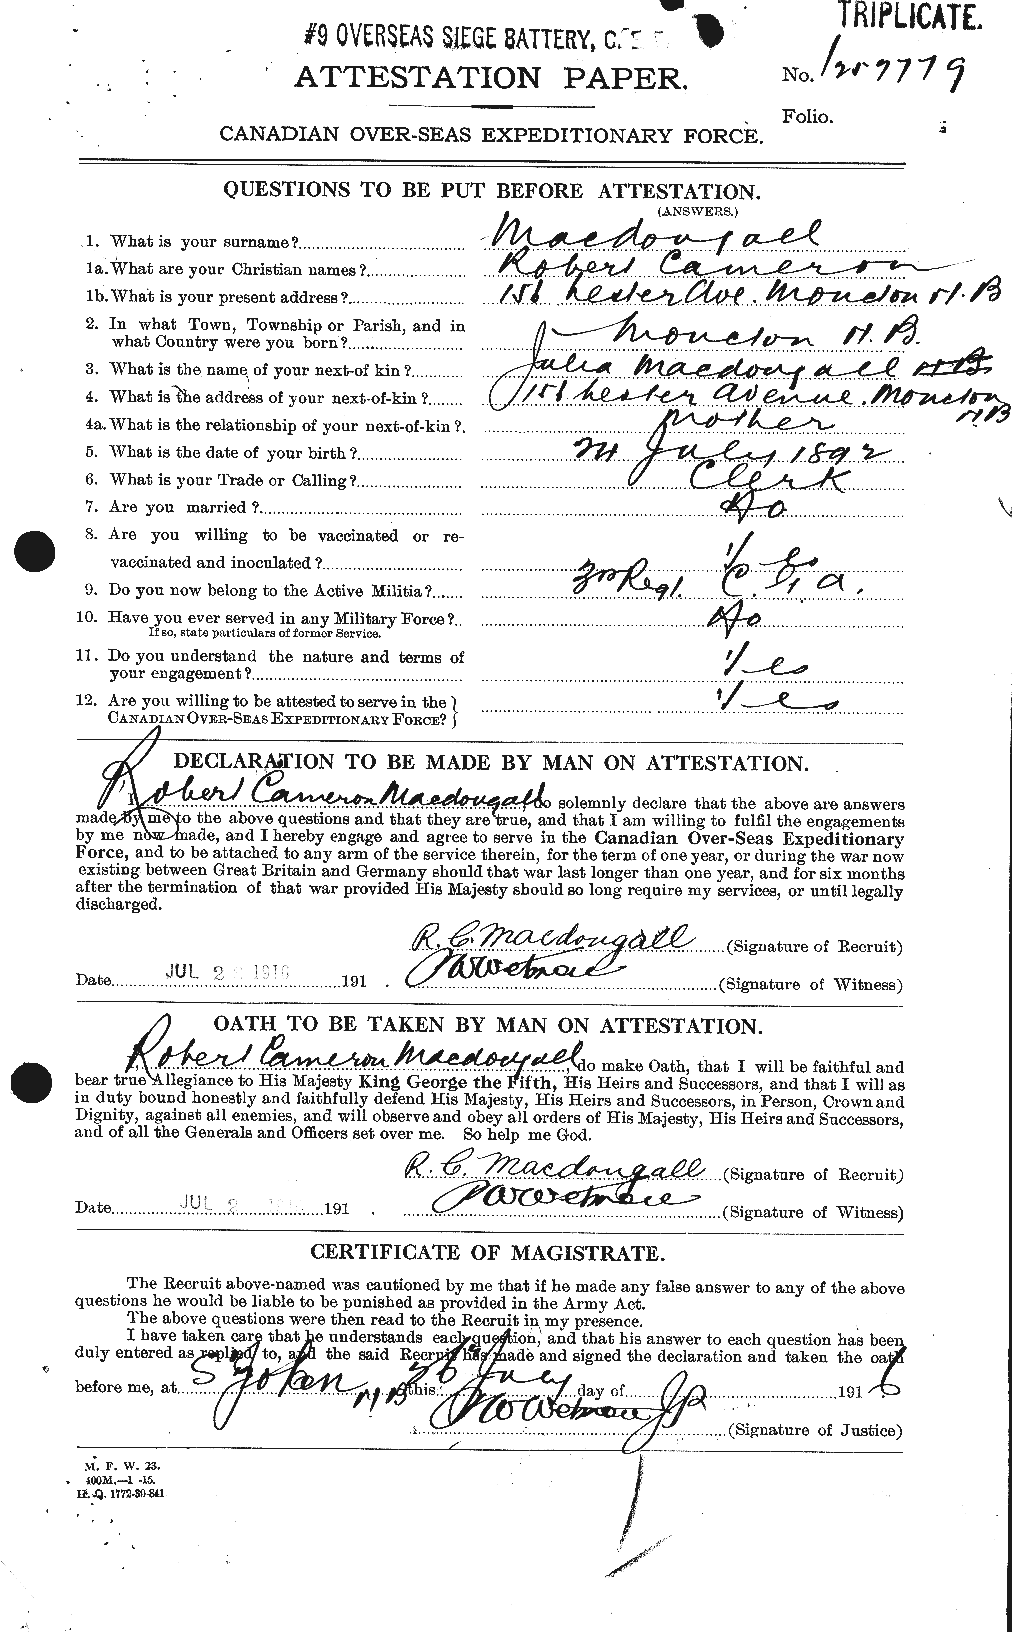 Dossiers du Personnel de la Première Guerre mondiale - CEC 518374a